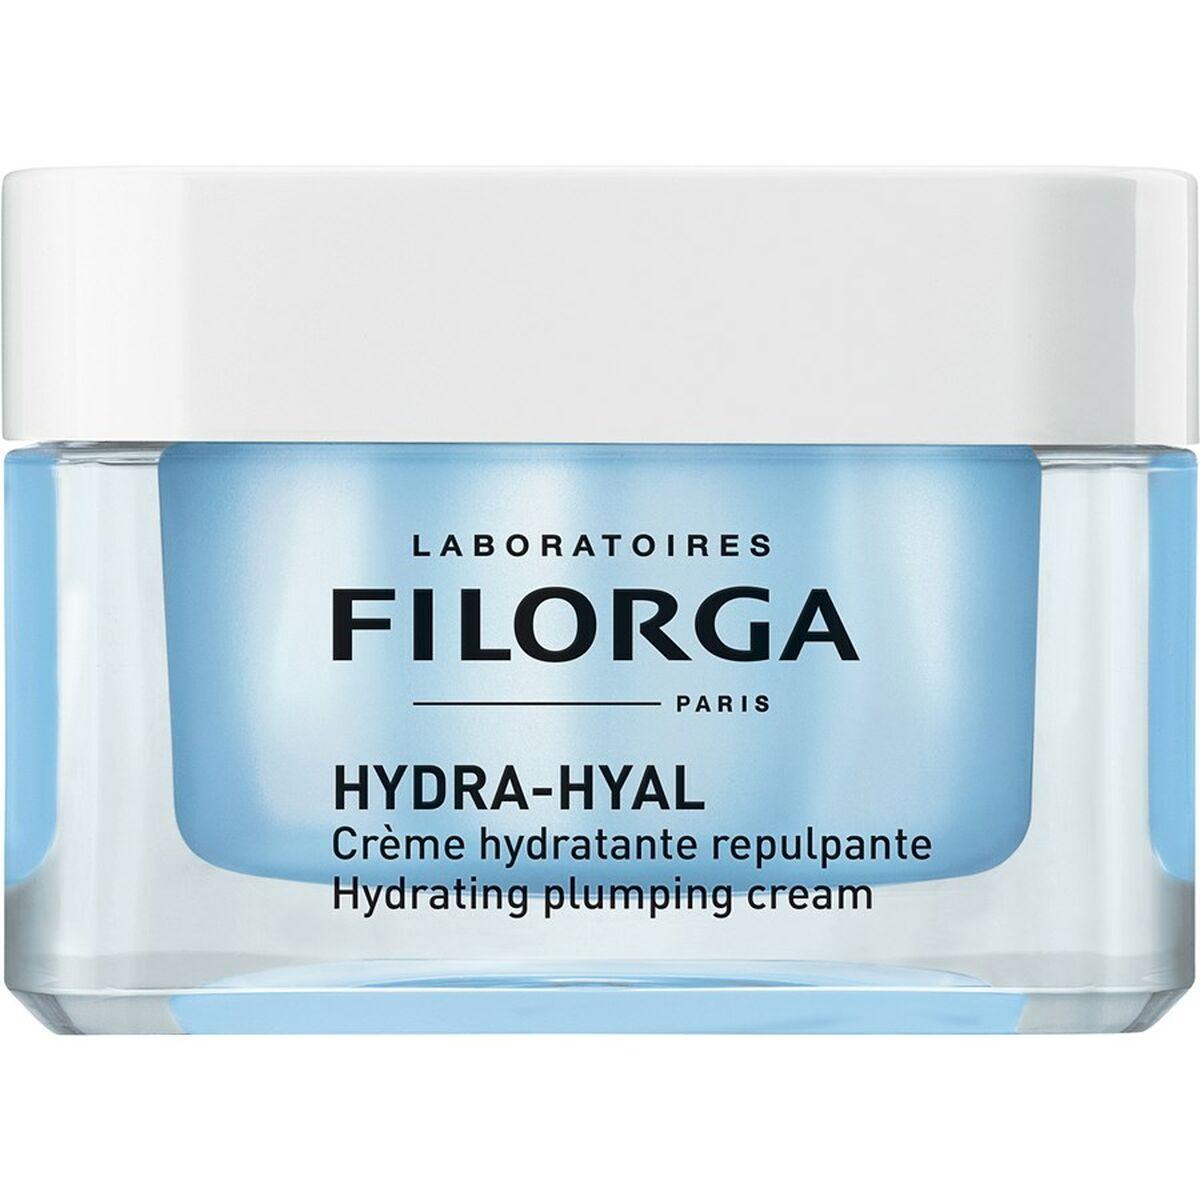 Billede af Fugtgivende creme Filorga Hyal 50 ml hos Boligcenter.dk